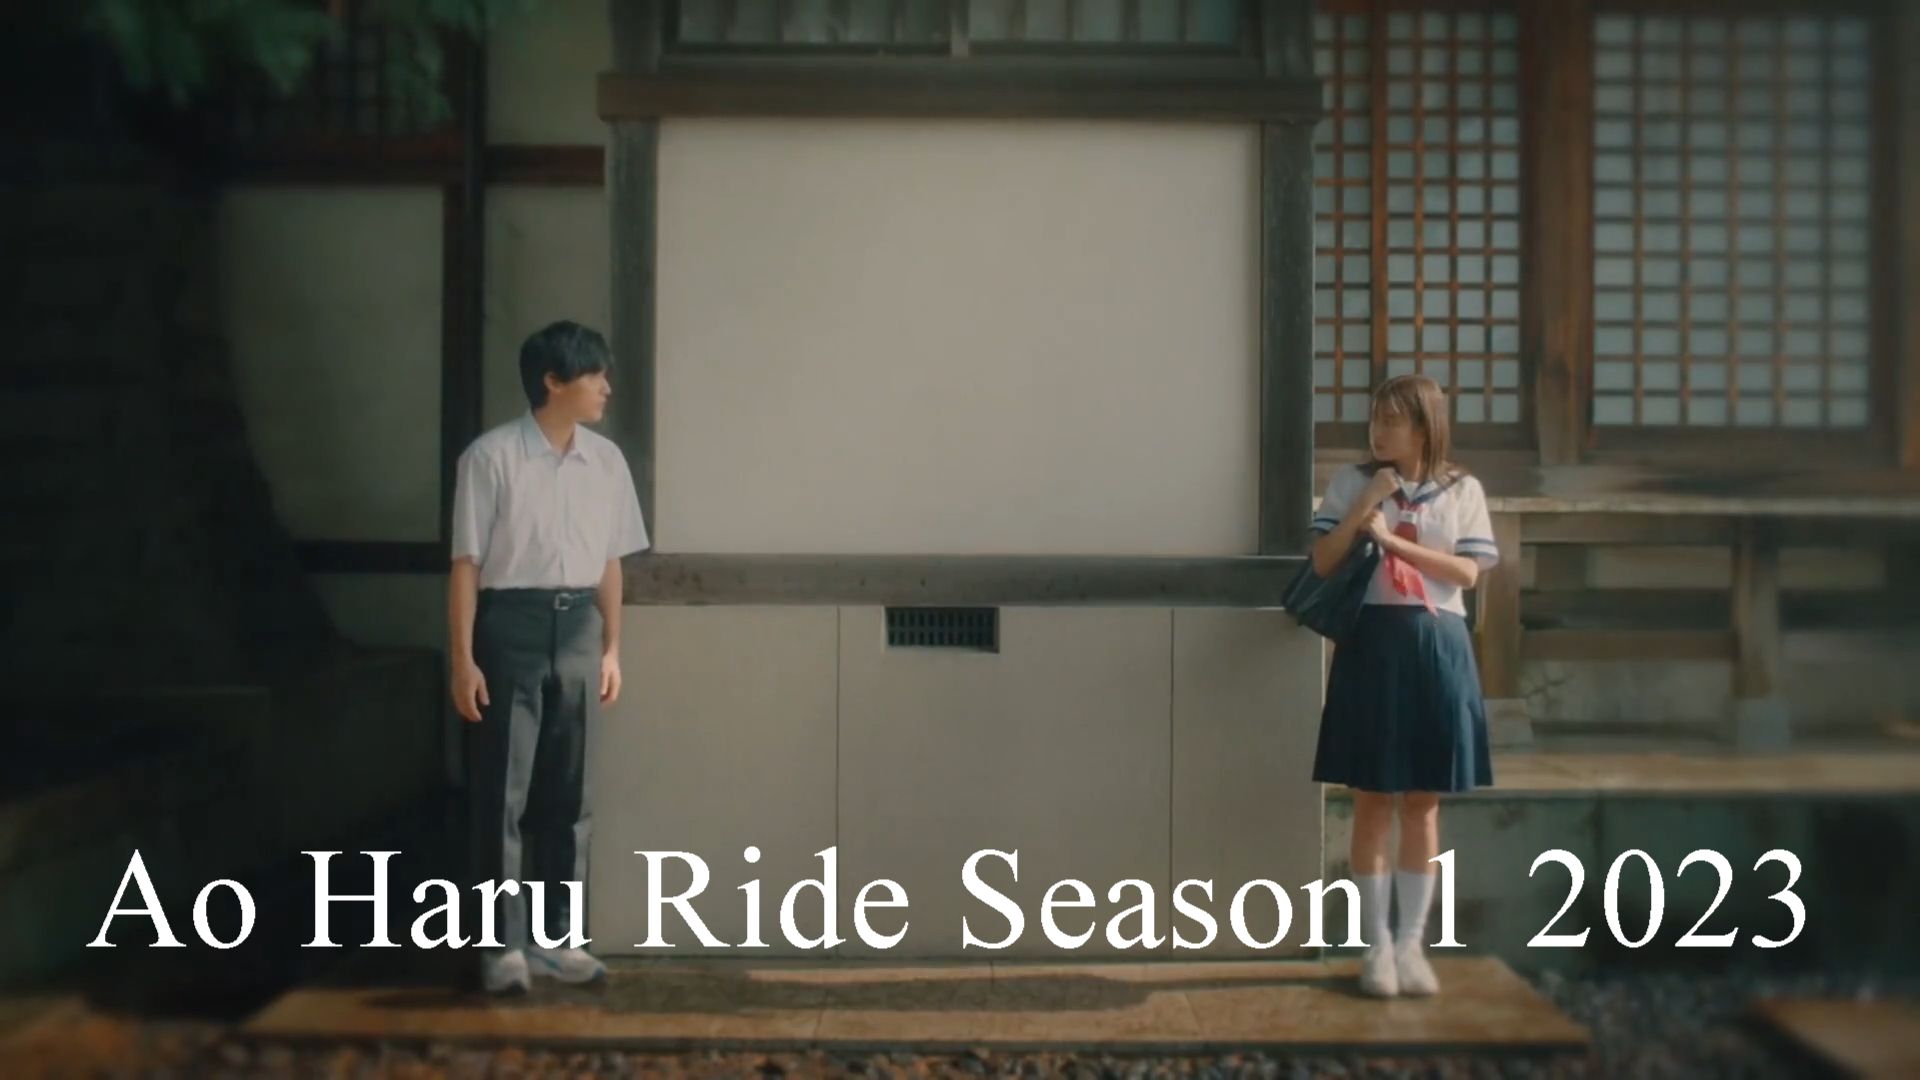 Stream Ao haru ride op by Bubbleteaisfab